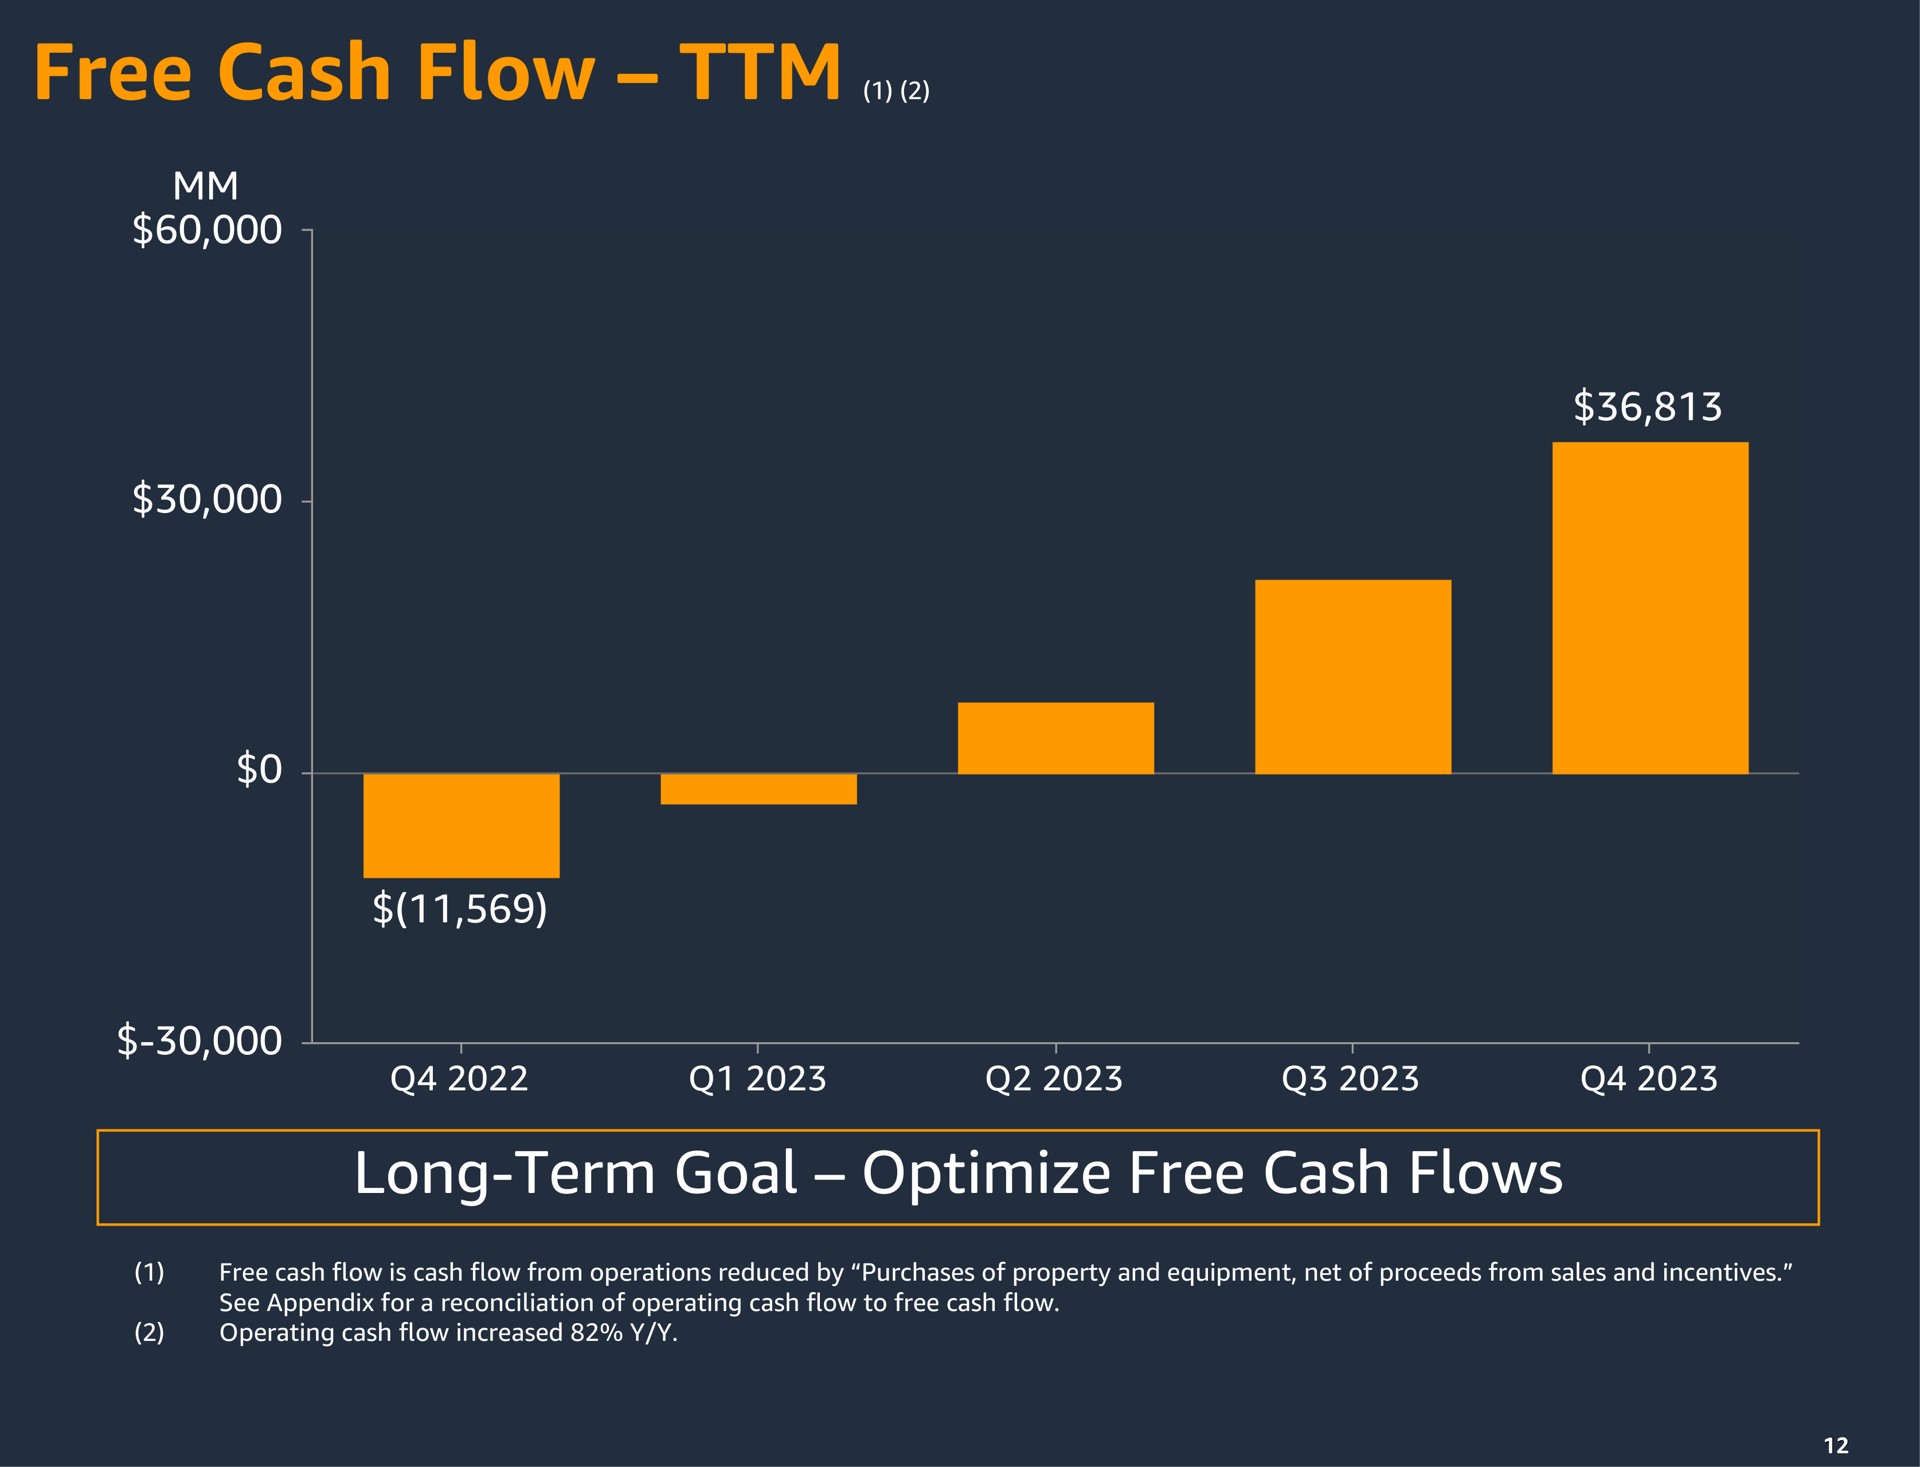 free cash flow a long term goal optimize flows | Amazon